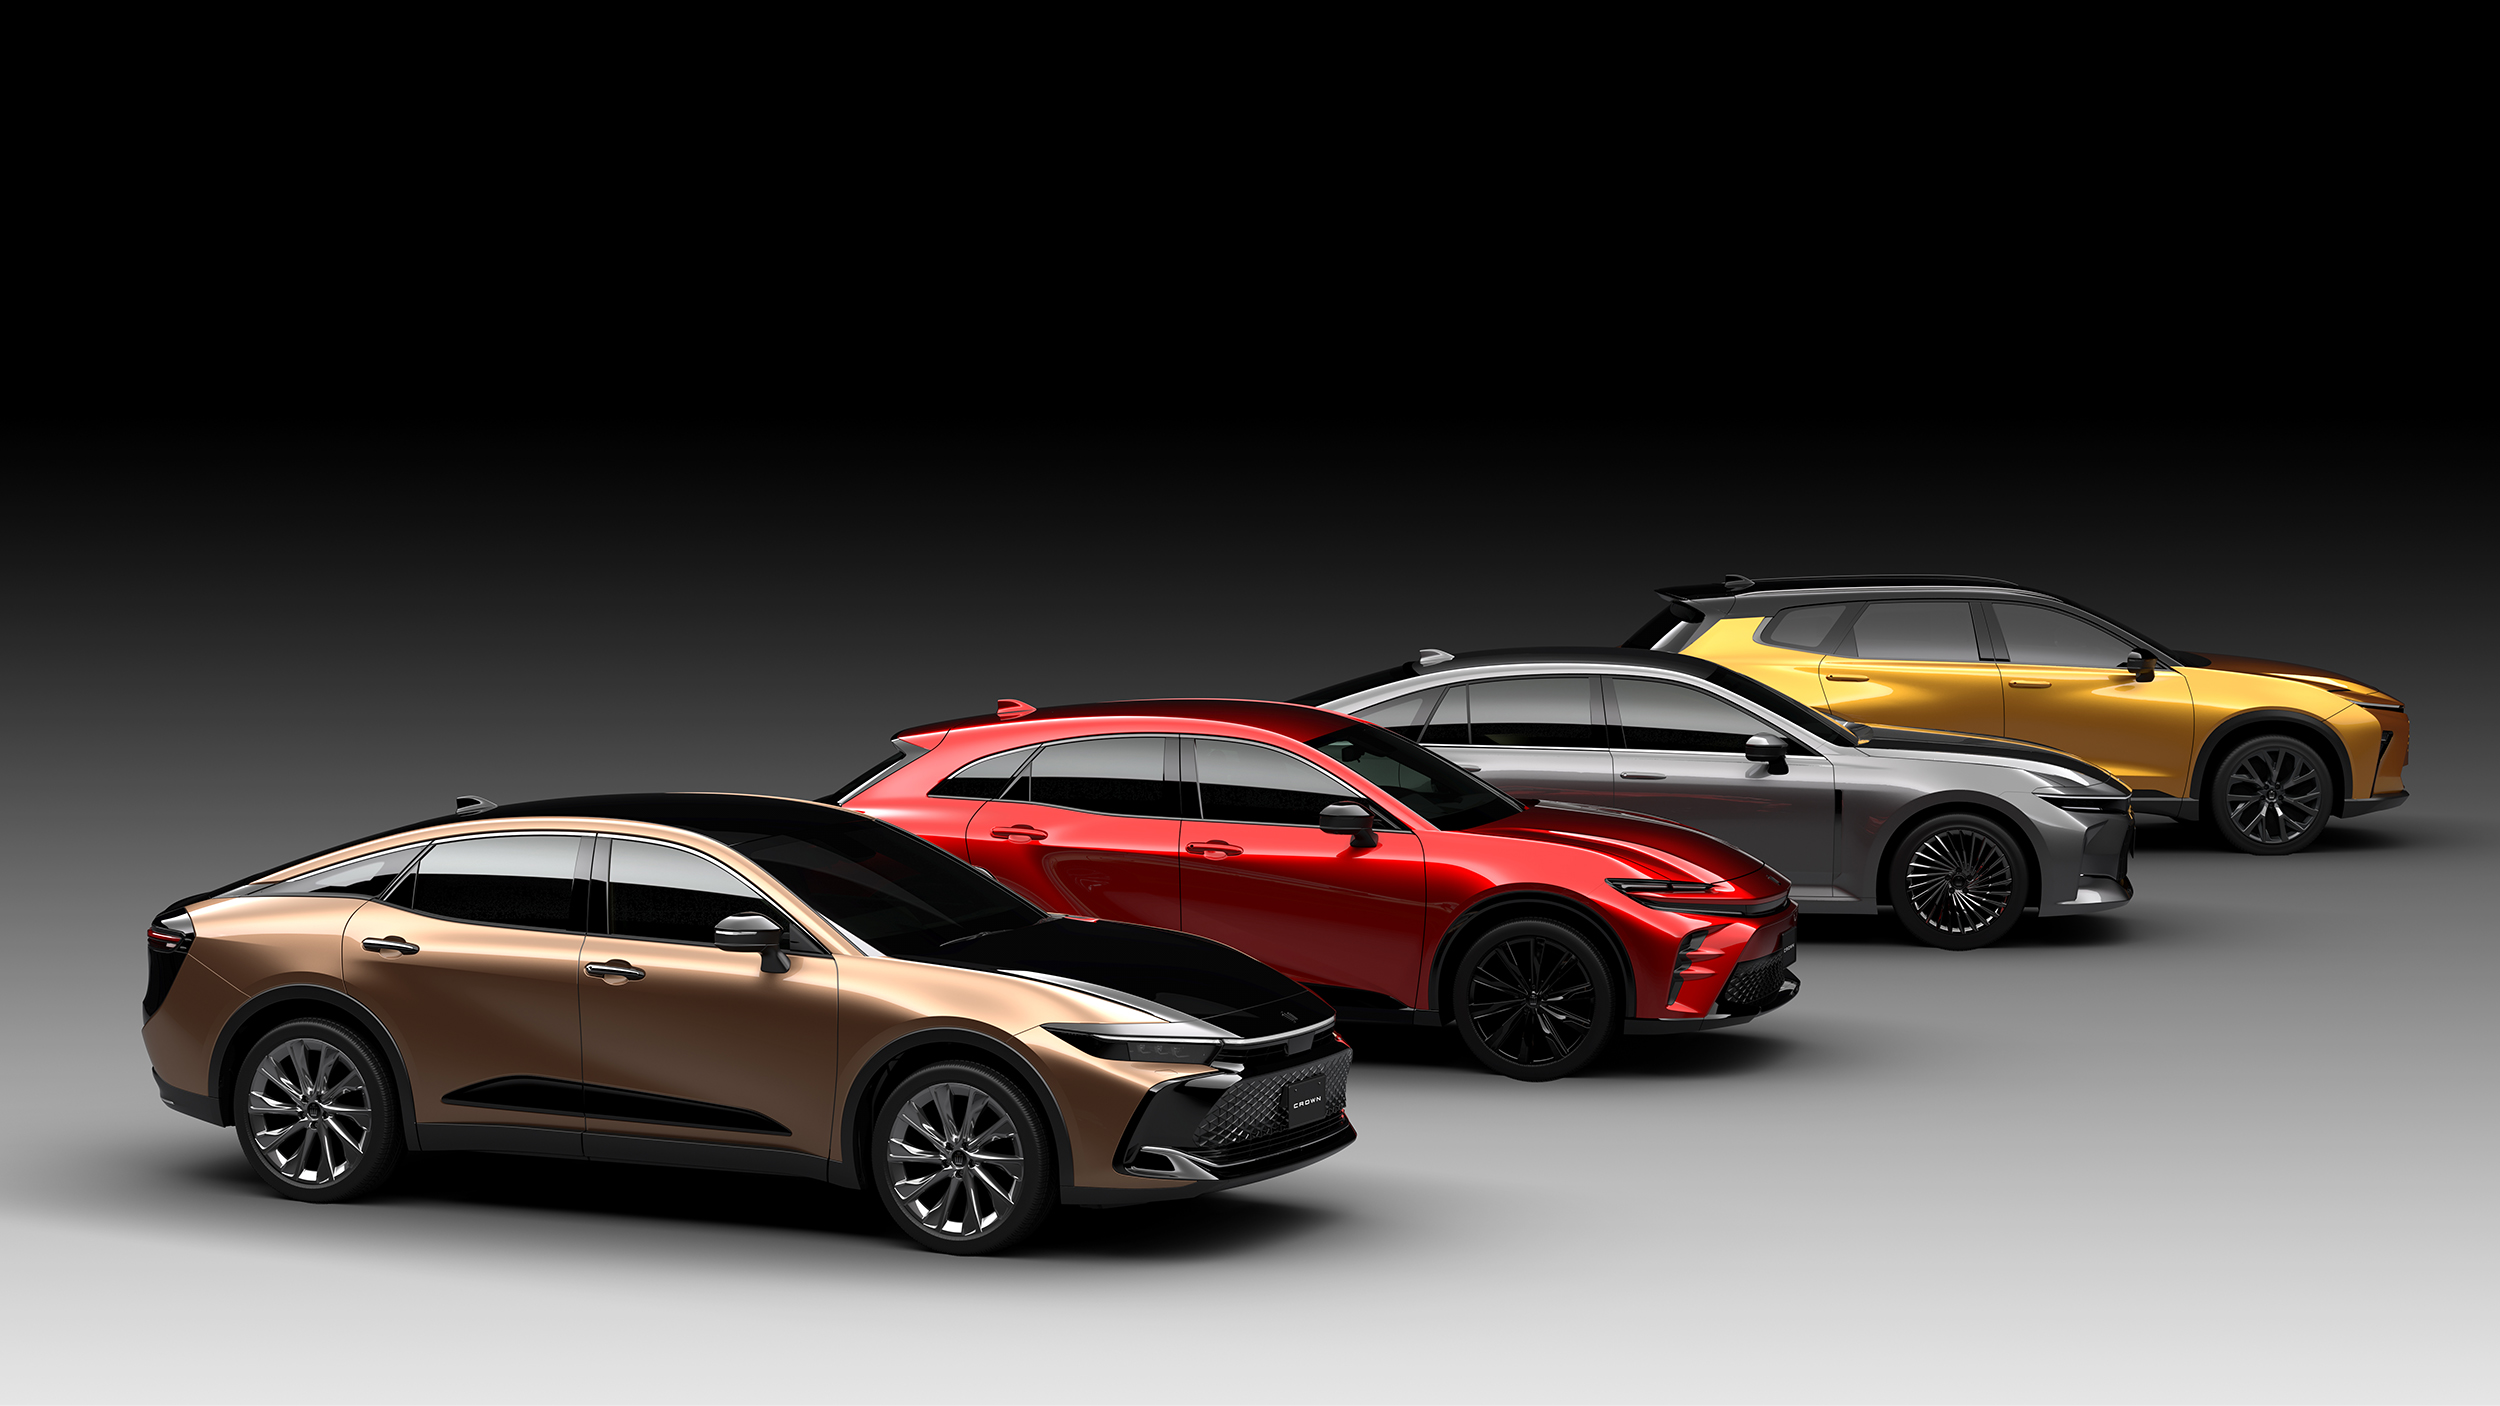 As quatro variantes do Toyota Crown